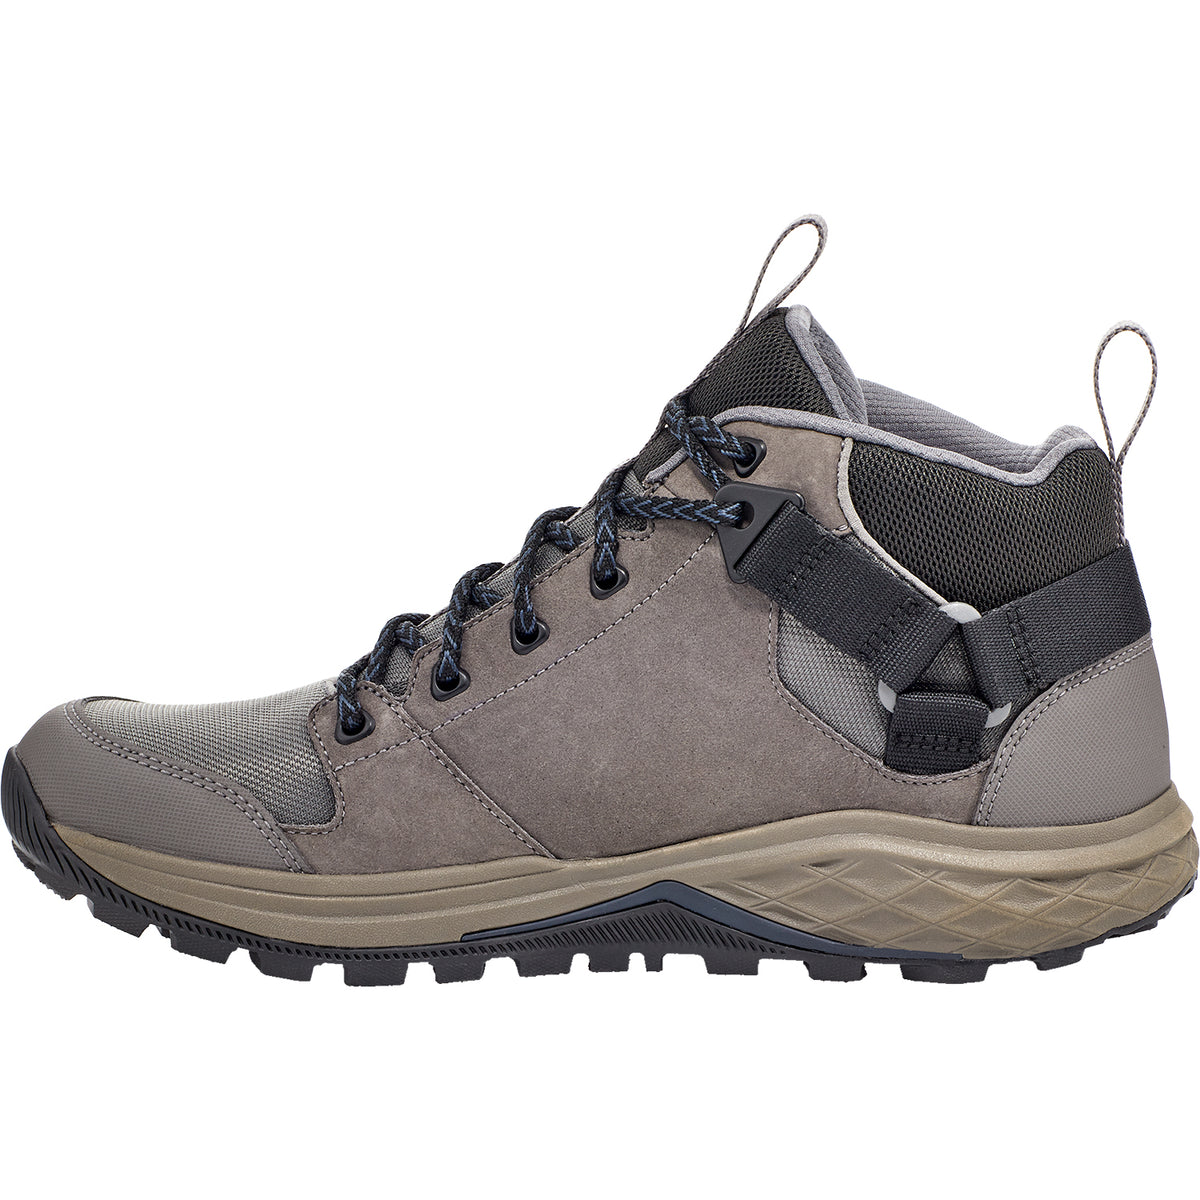 Teva Grandview Mid GTX | Men's Waterproof Hiking Boots | Footwear etc.